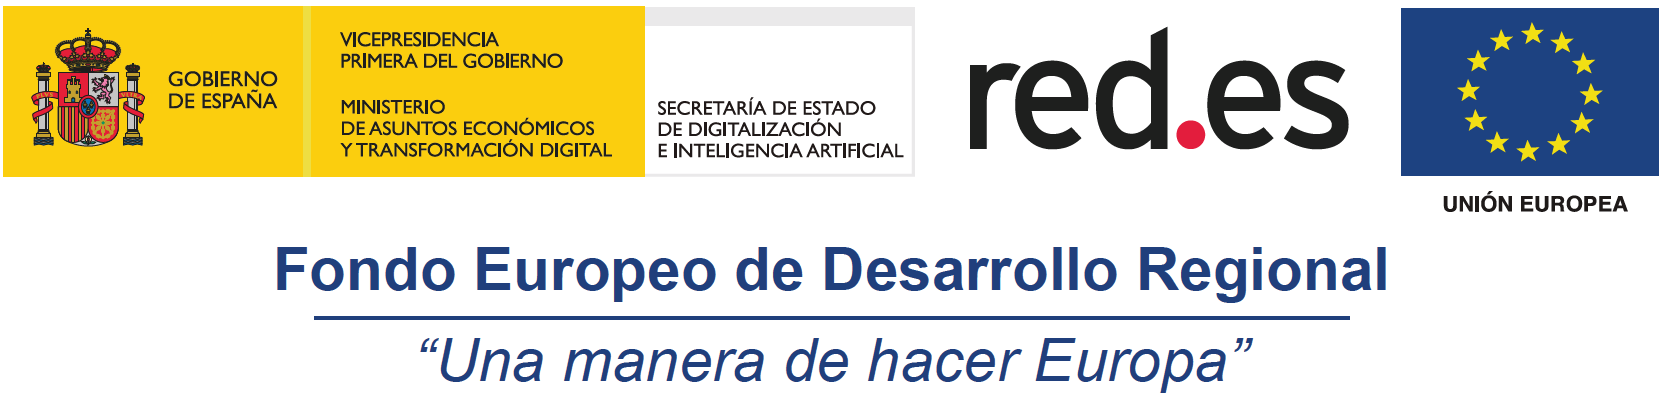 Red.es kit digital